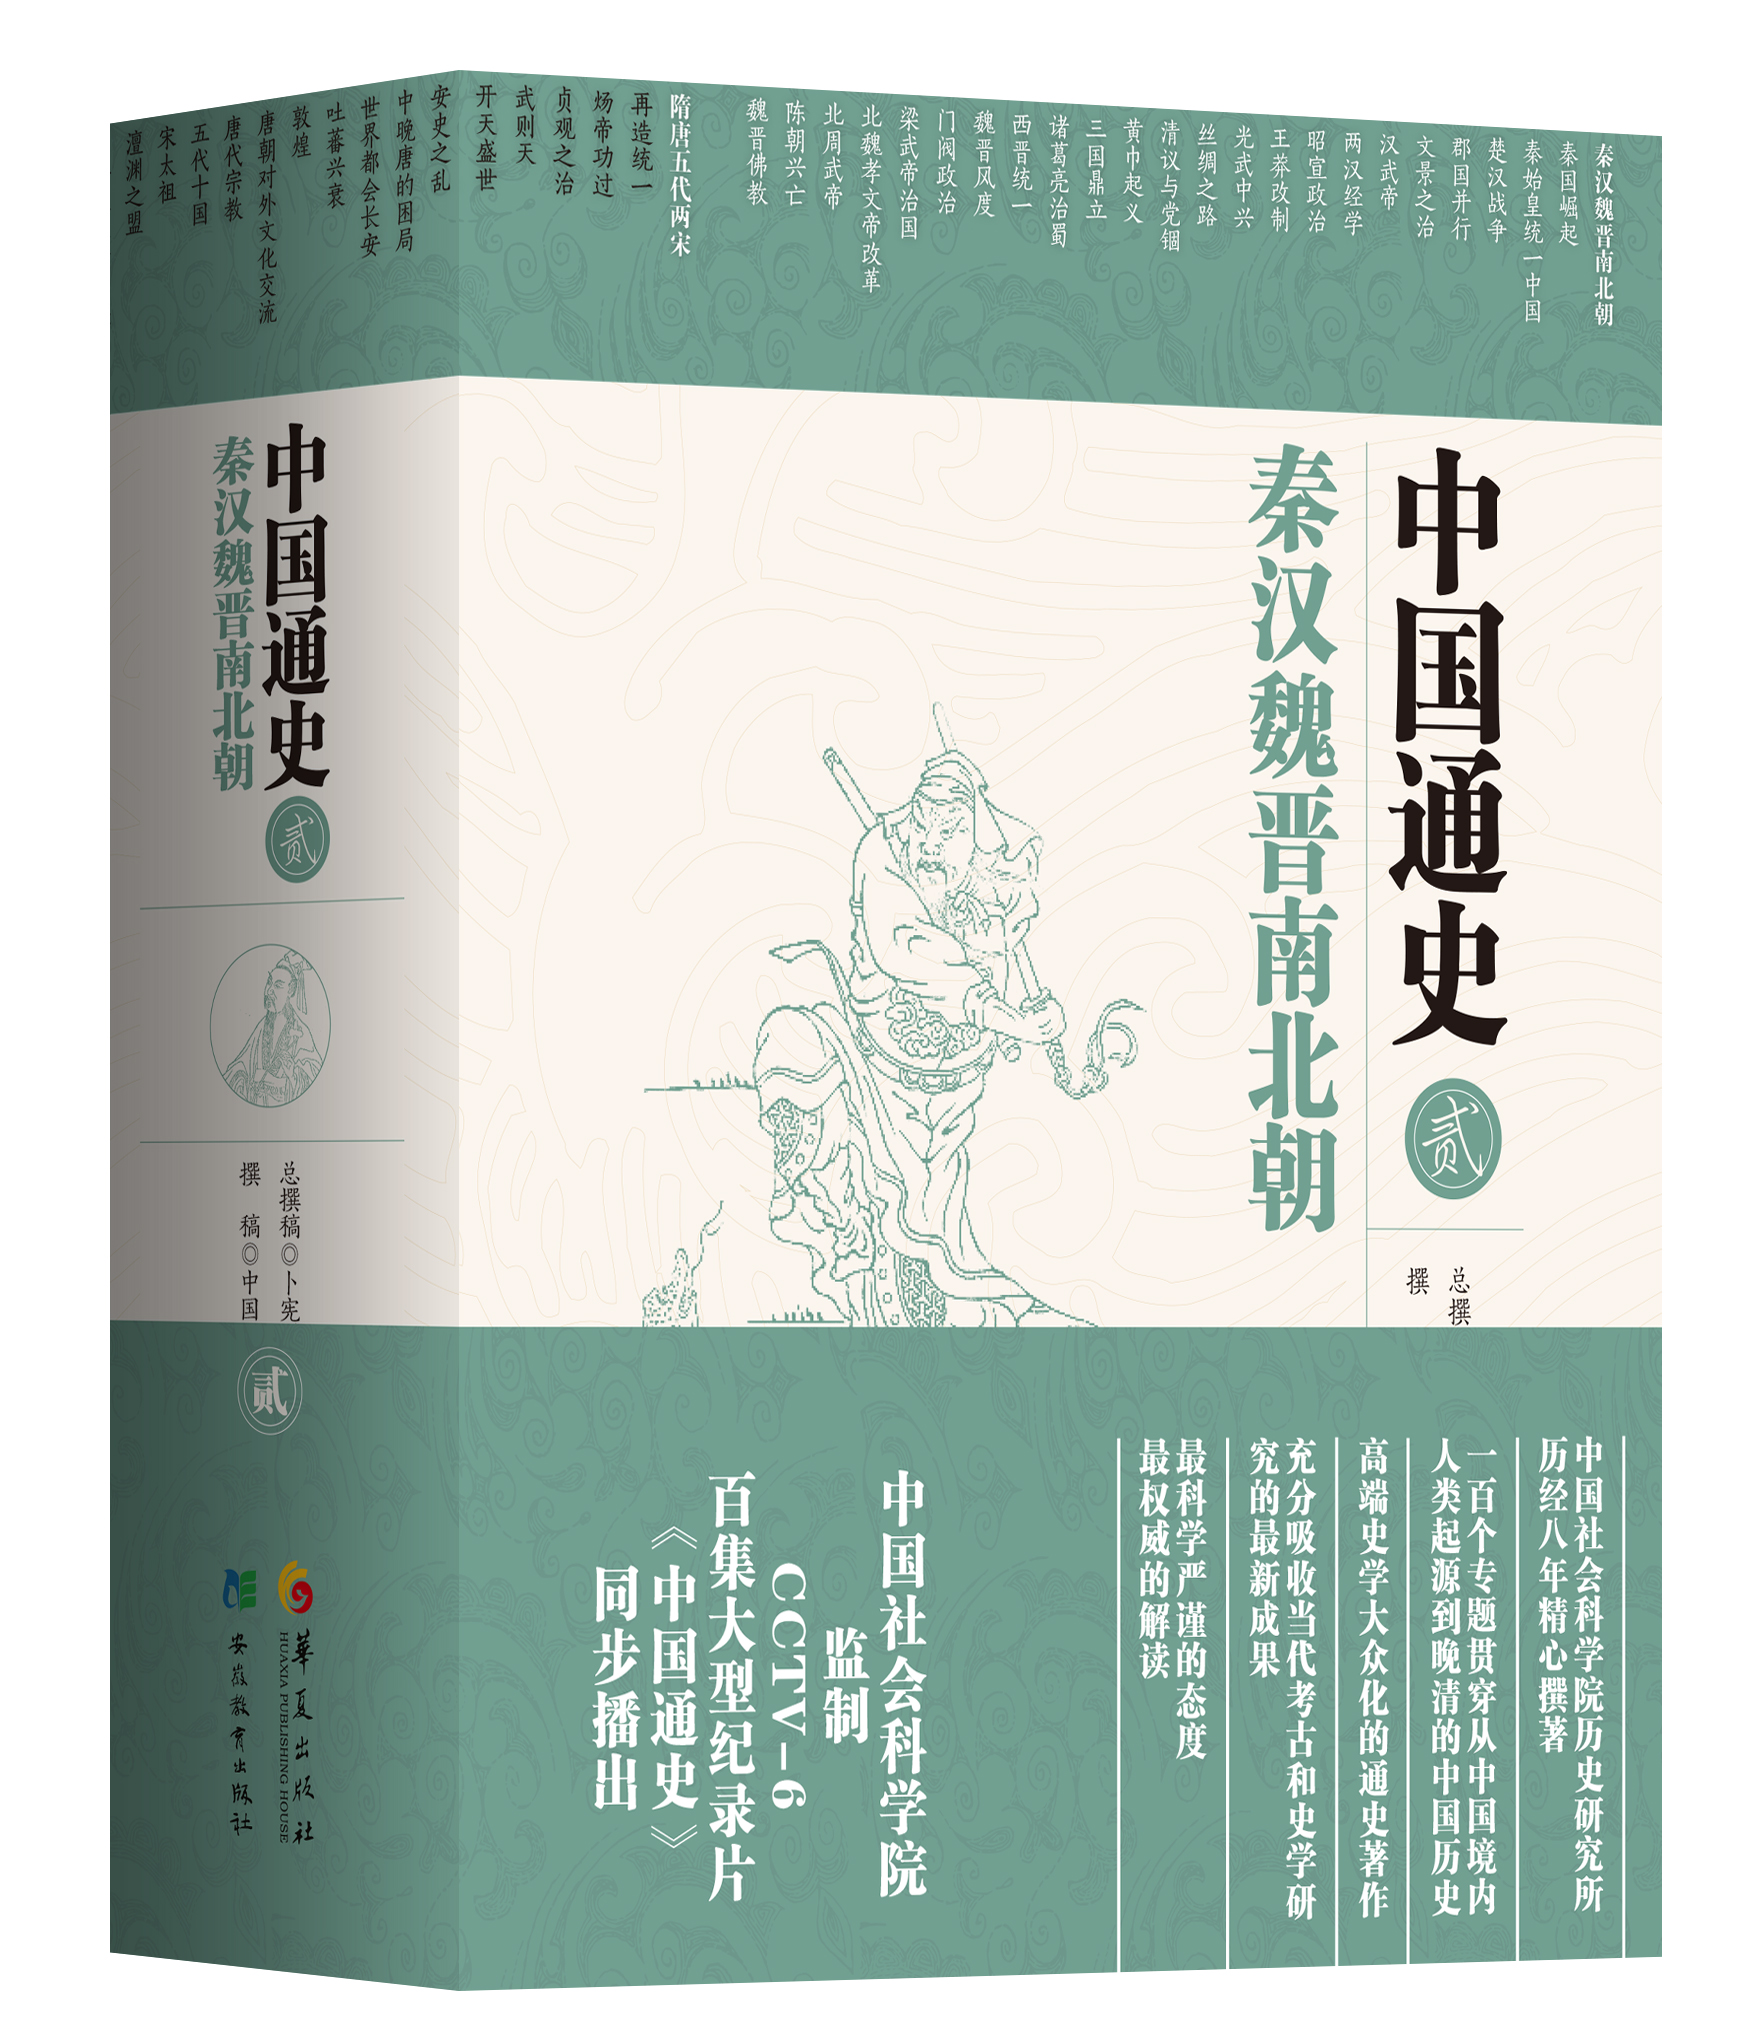 中國社科院五卷本《中國通史》